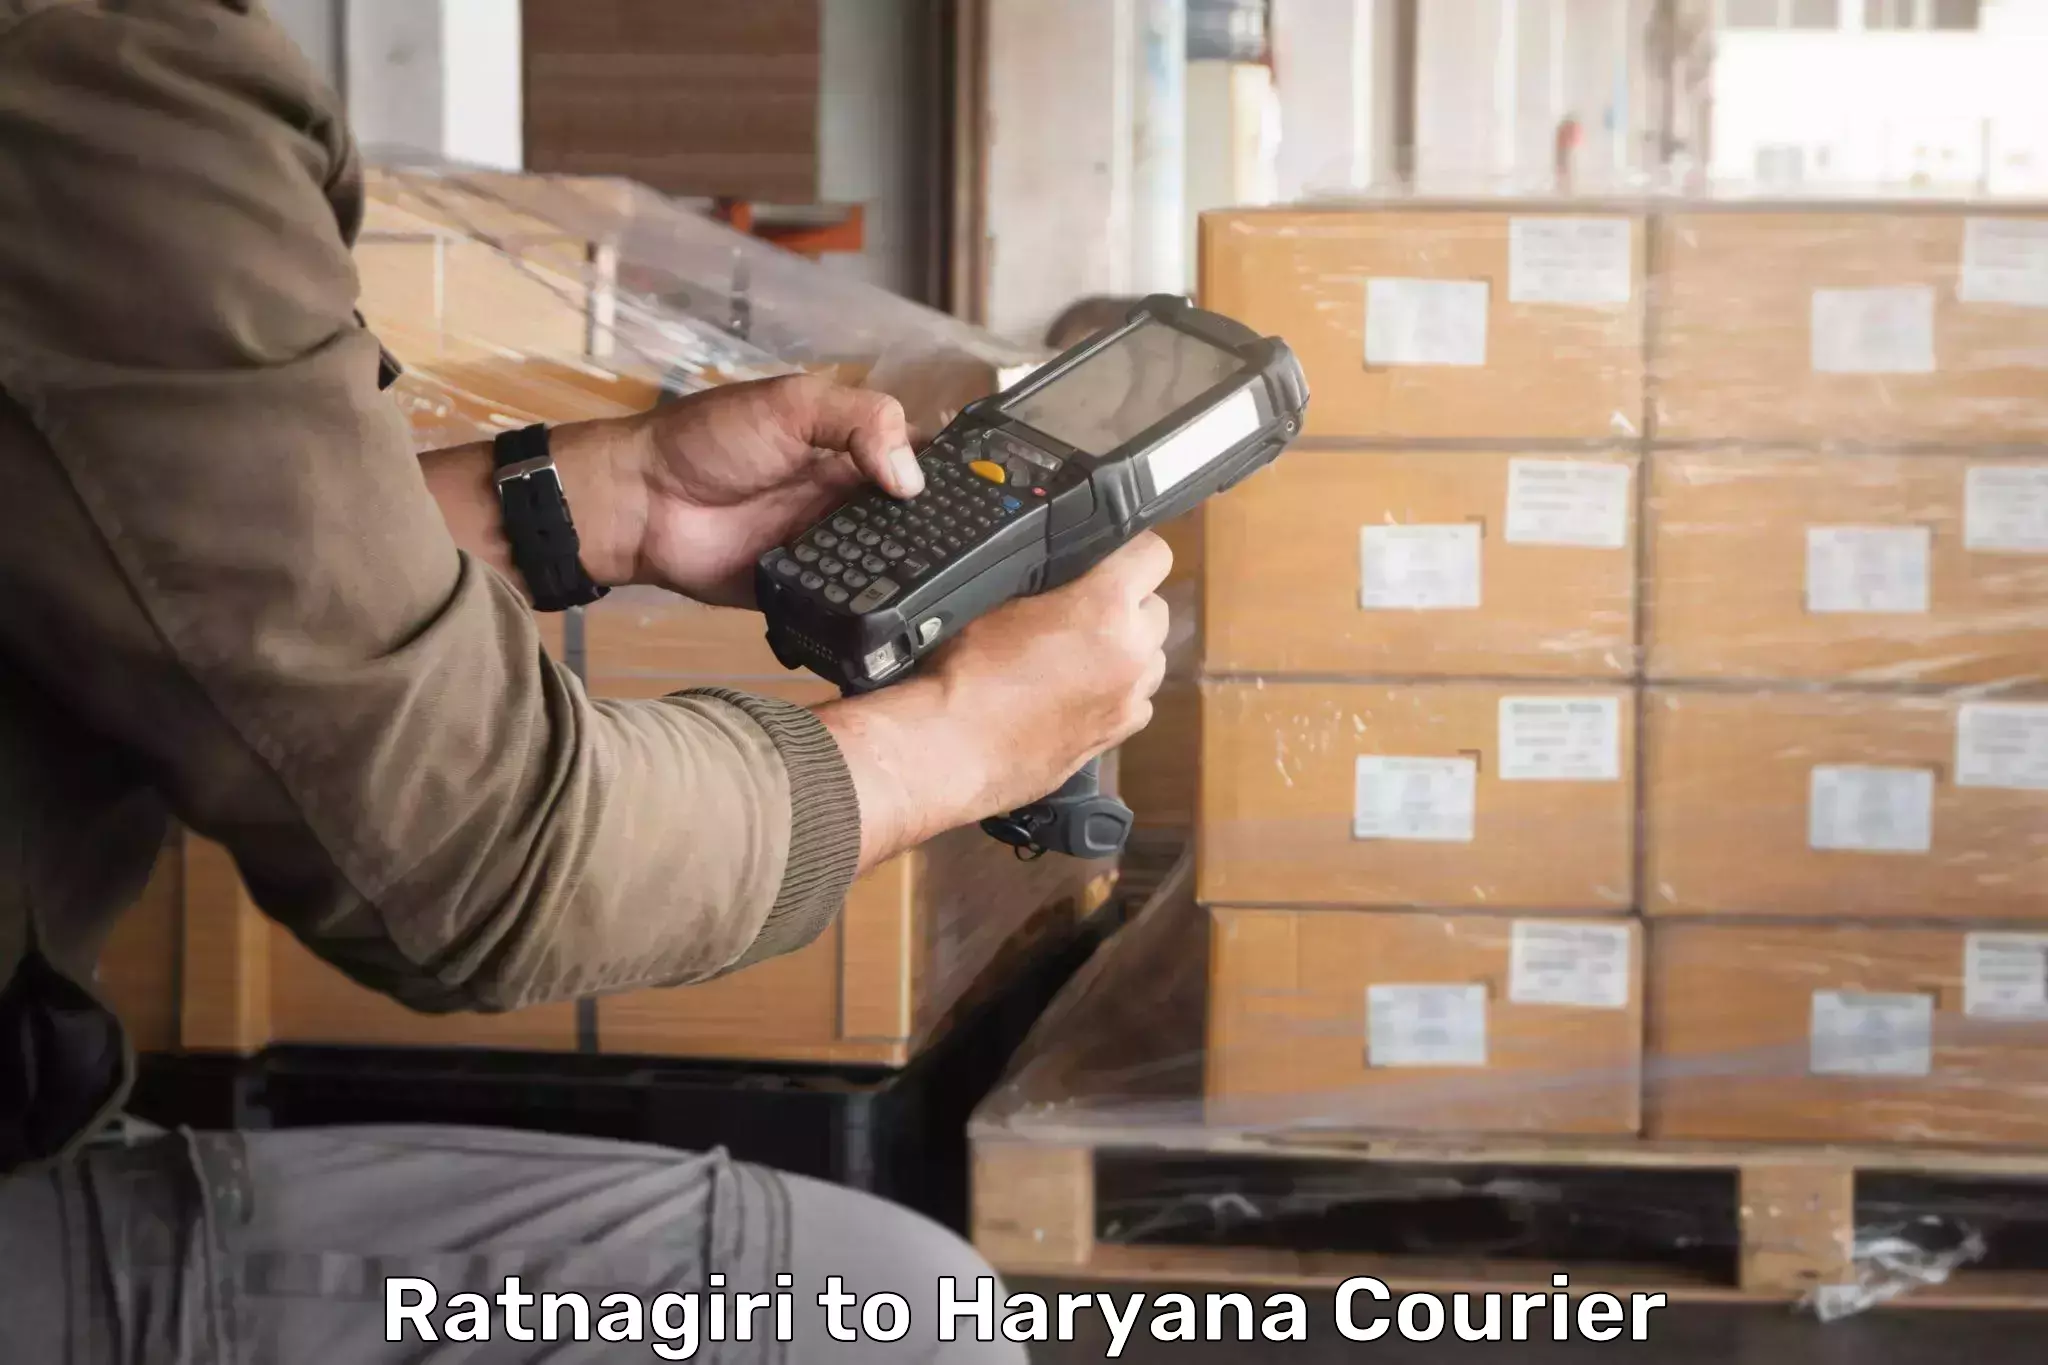 Bulk courier orders Ratnagiri to Pinjore